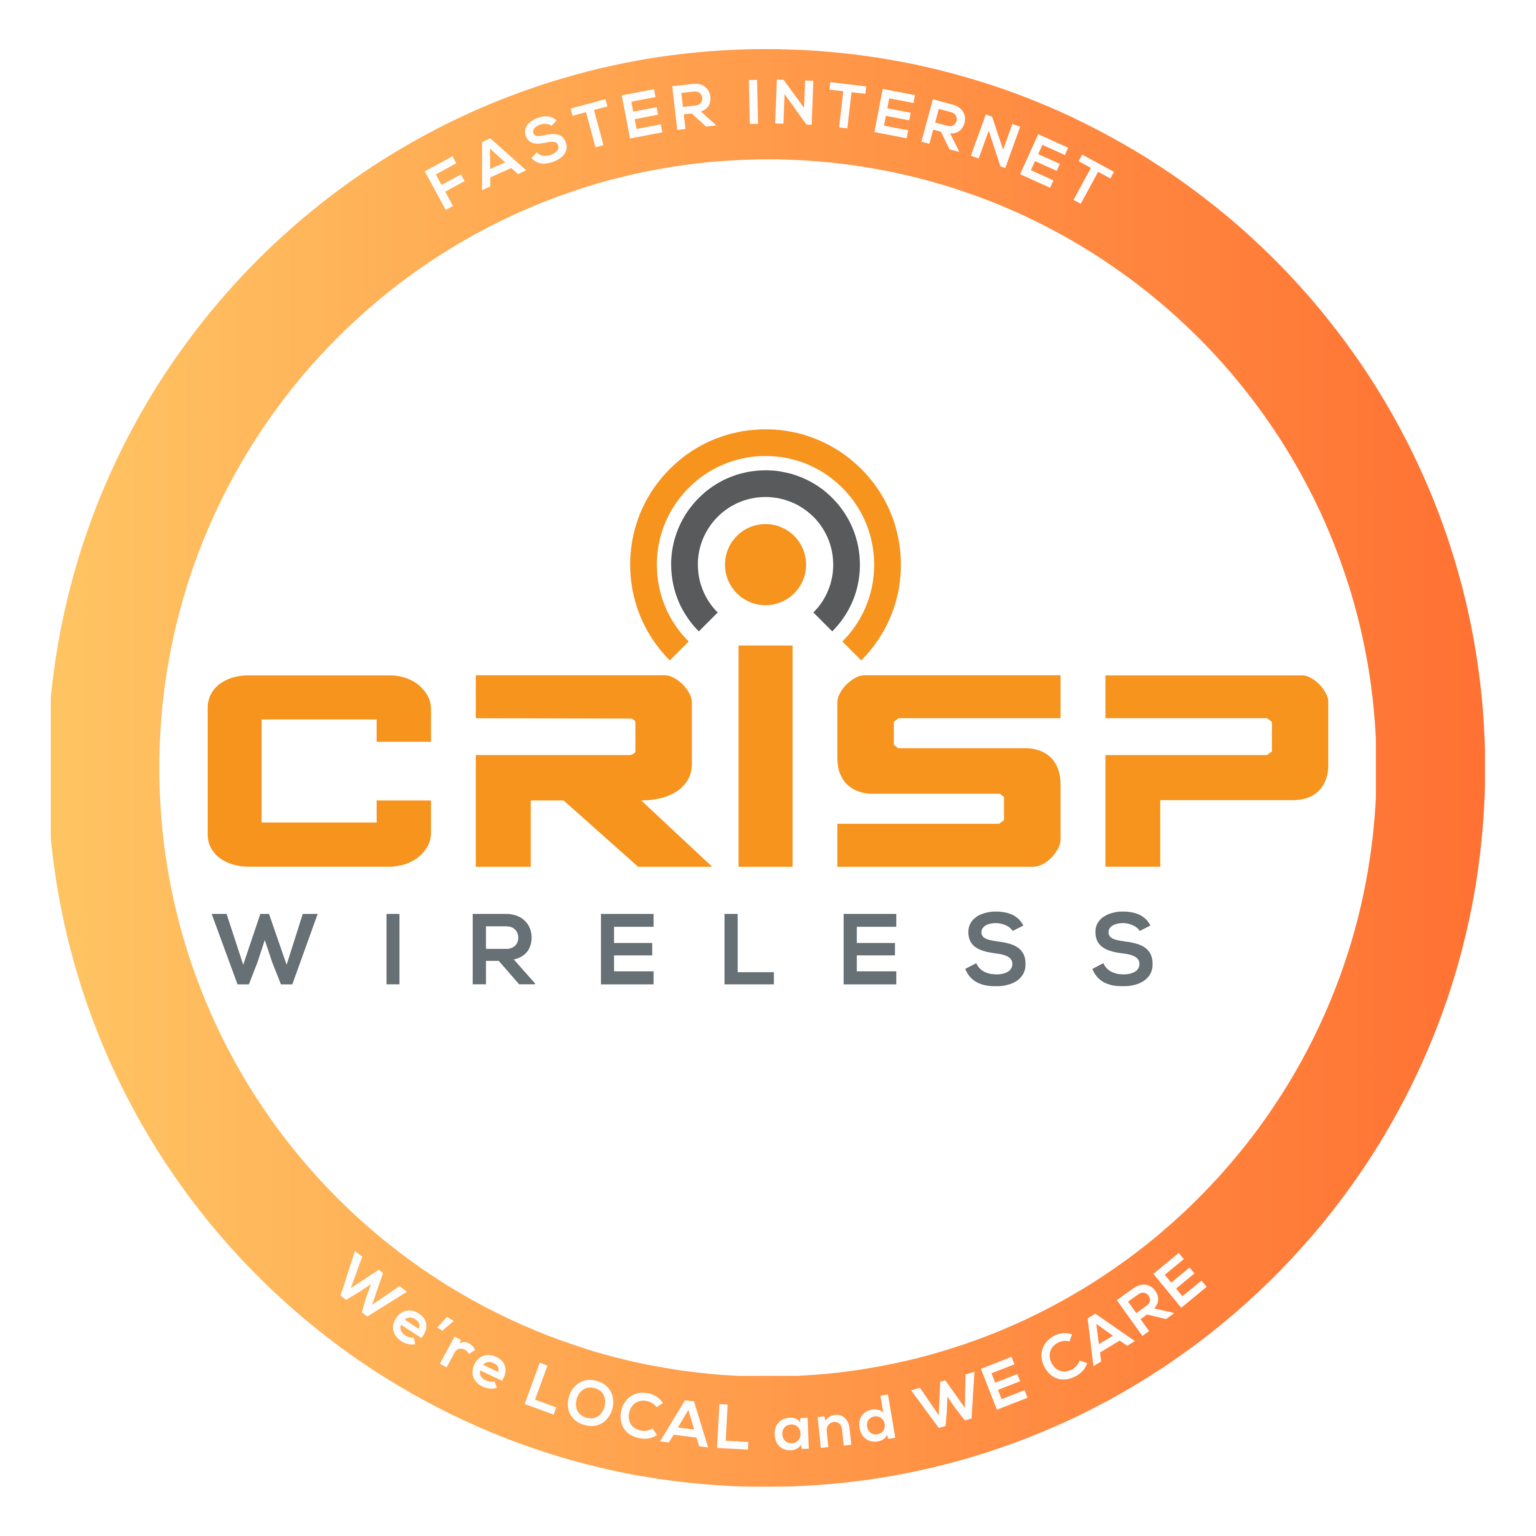 CRISP Wireless logo